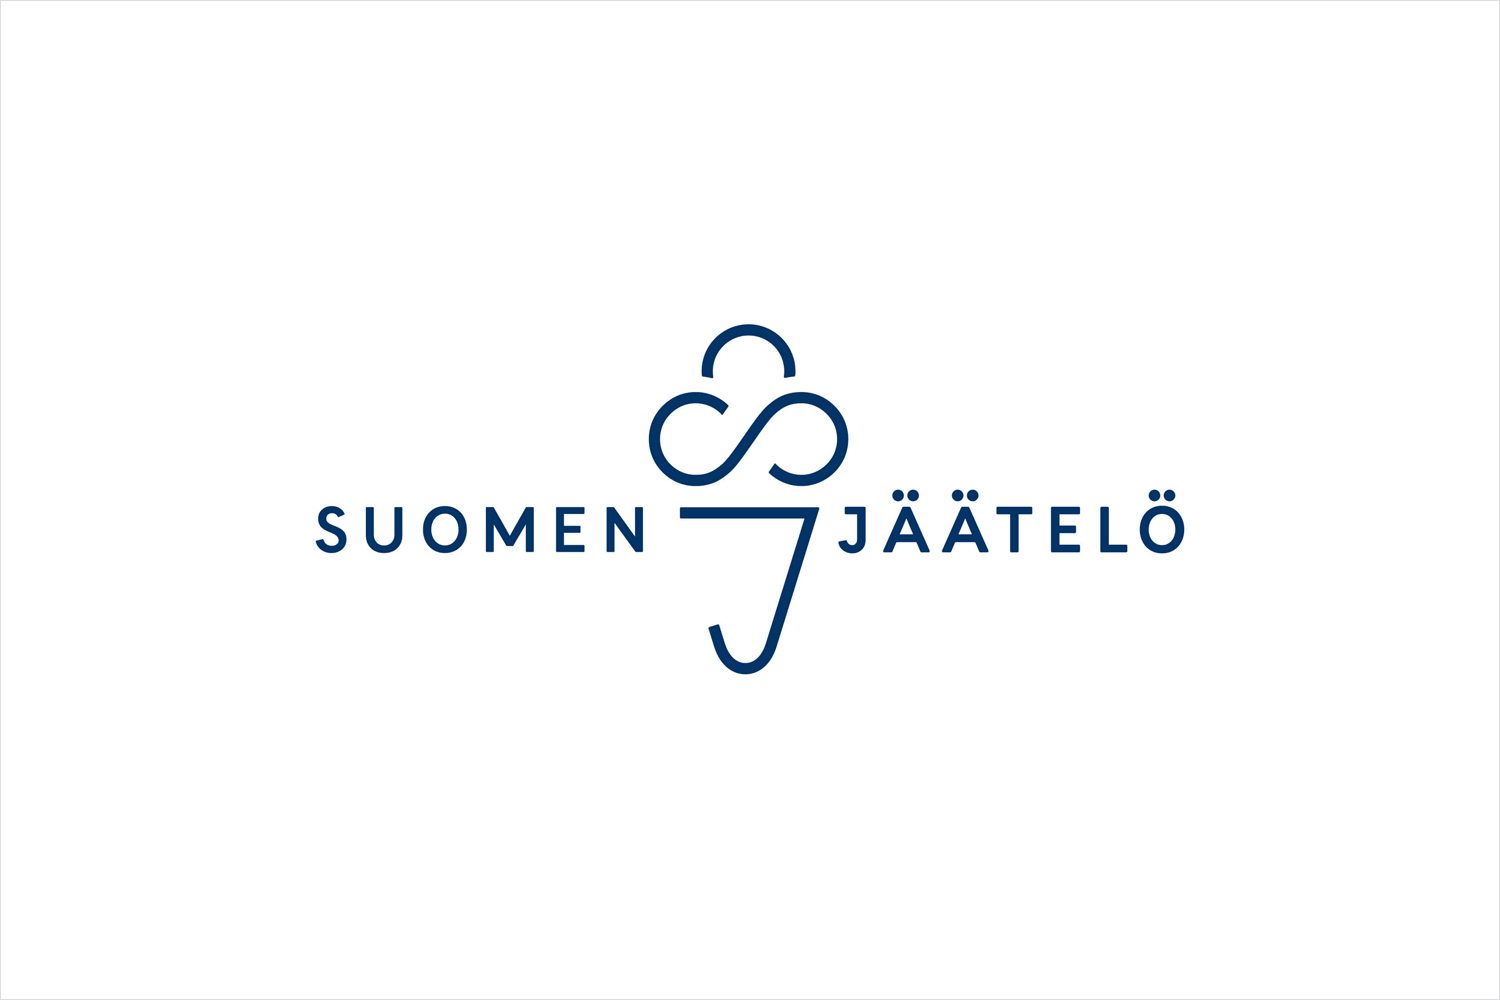 Logo design by Helsinki-based Werklig for Finnish ice cream brand Suomen Jäätelö 